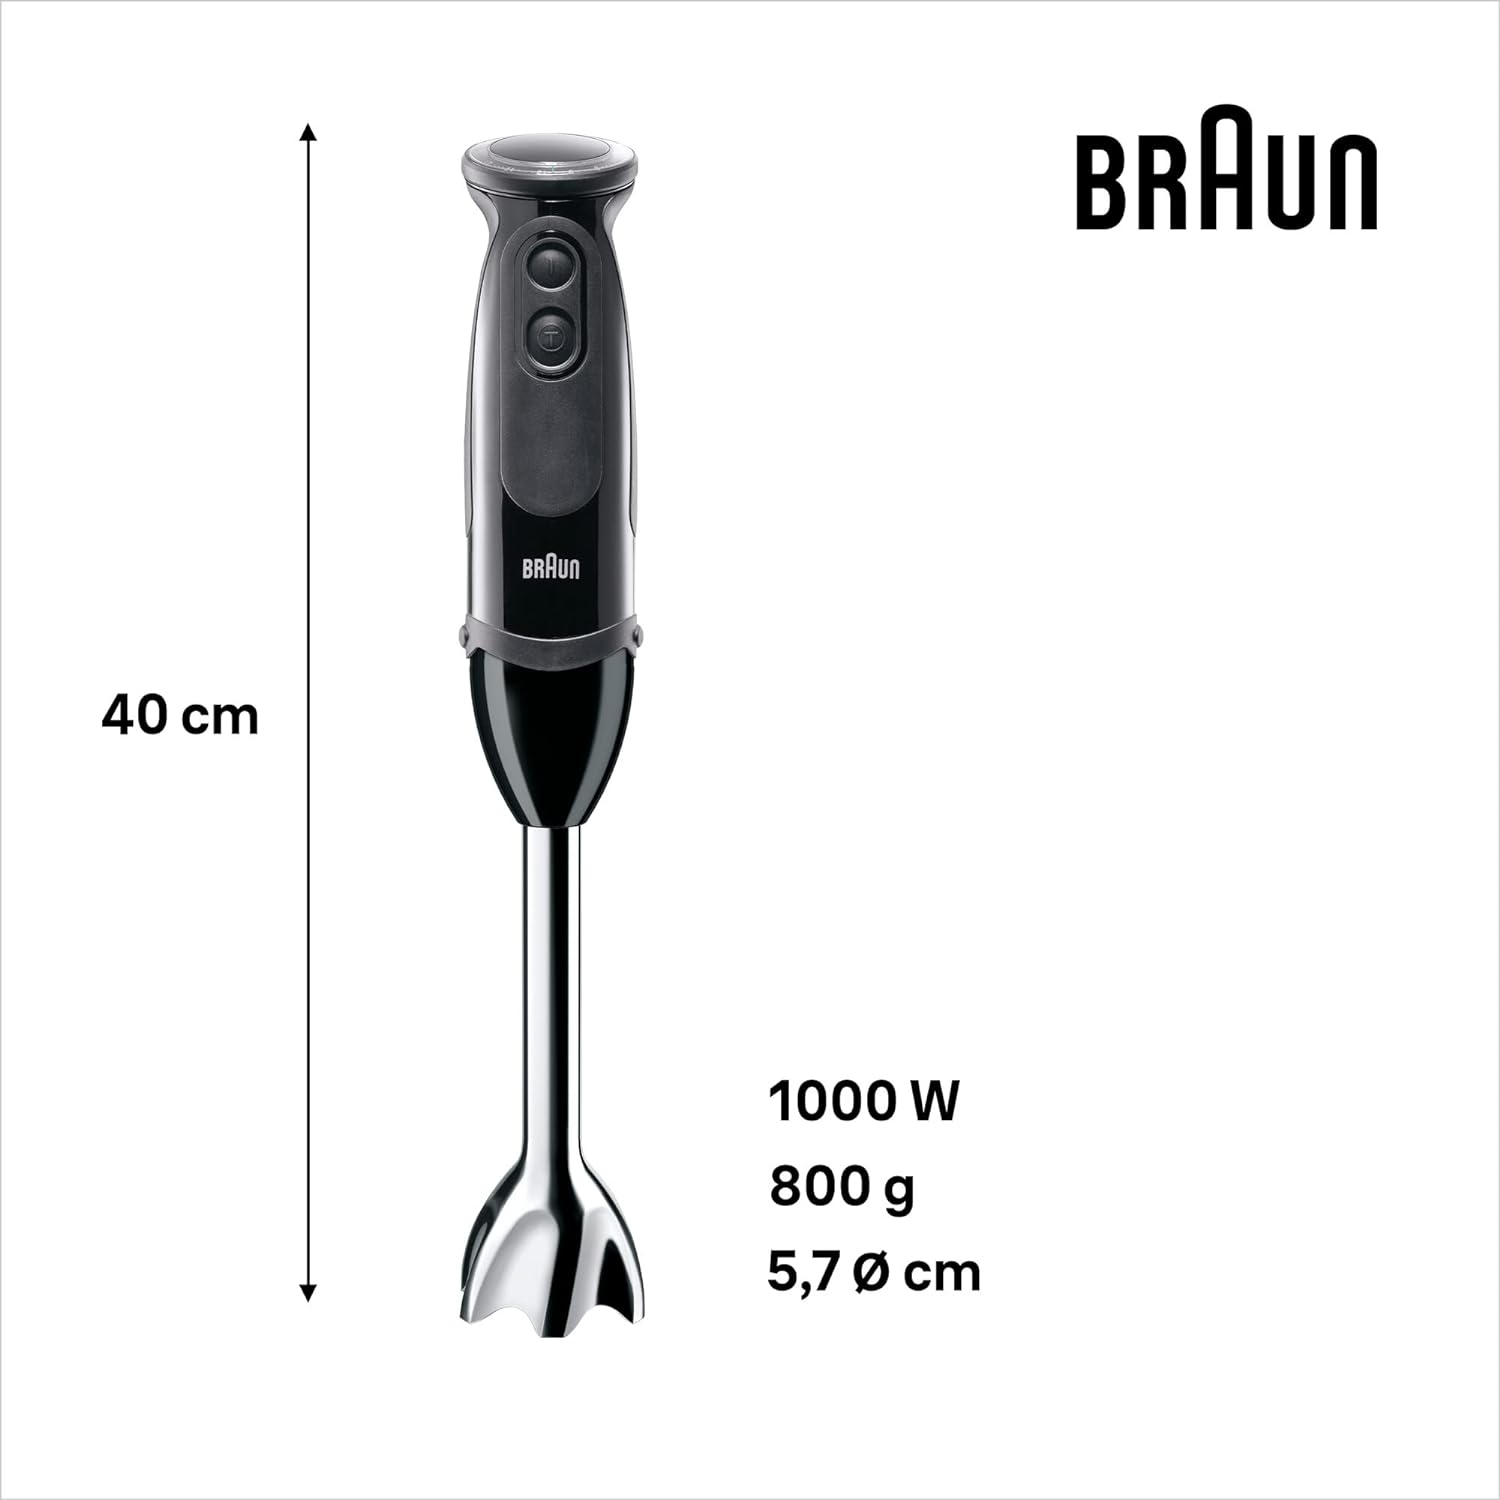 Braun MultiQuick 5 MQ5237 Hand Blender 4 IN 1 Black 1000W with 21 Speeds